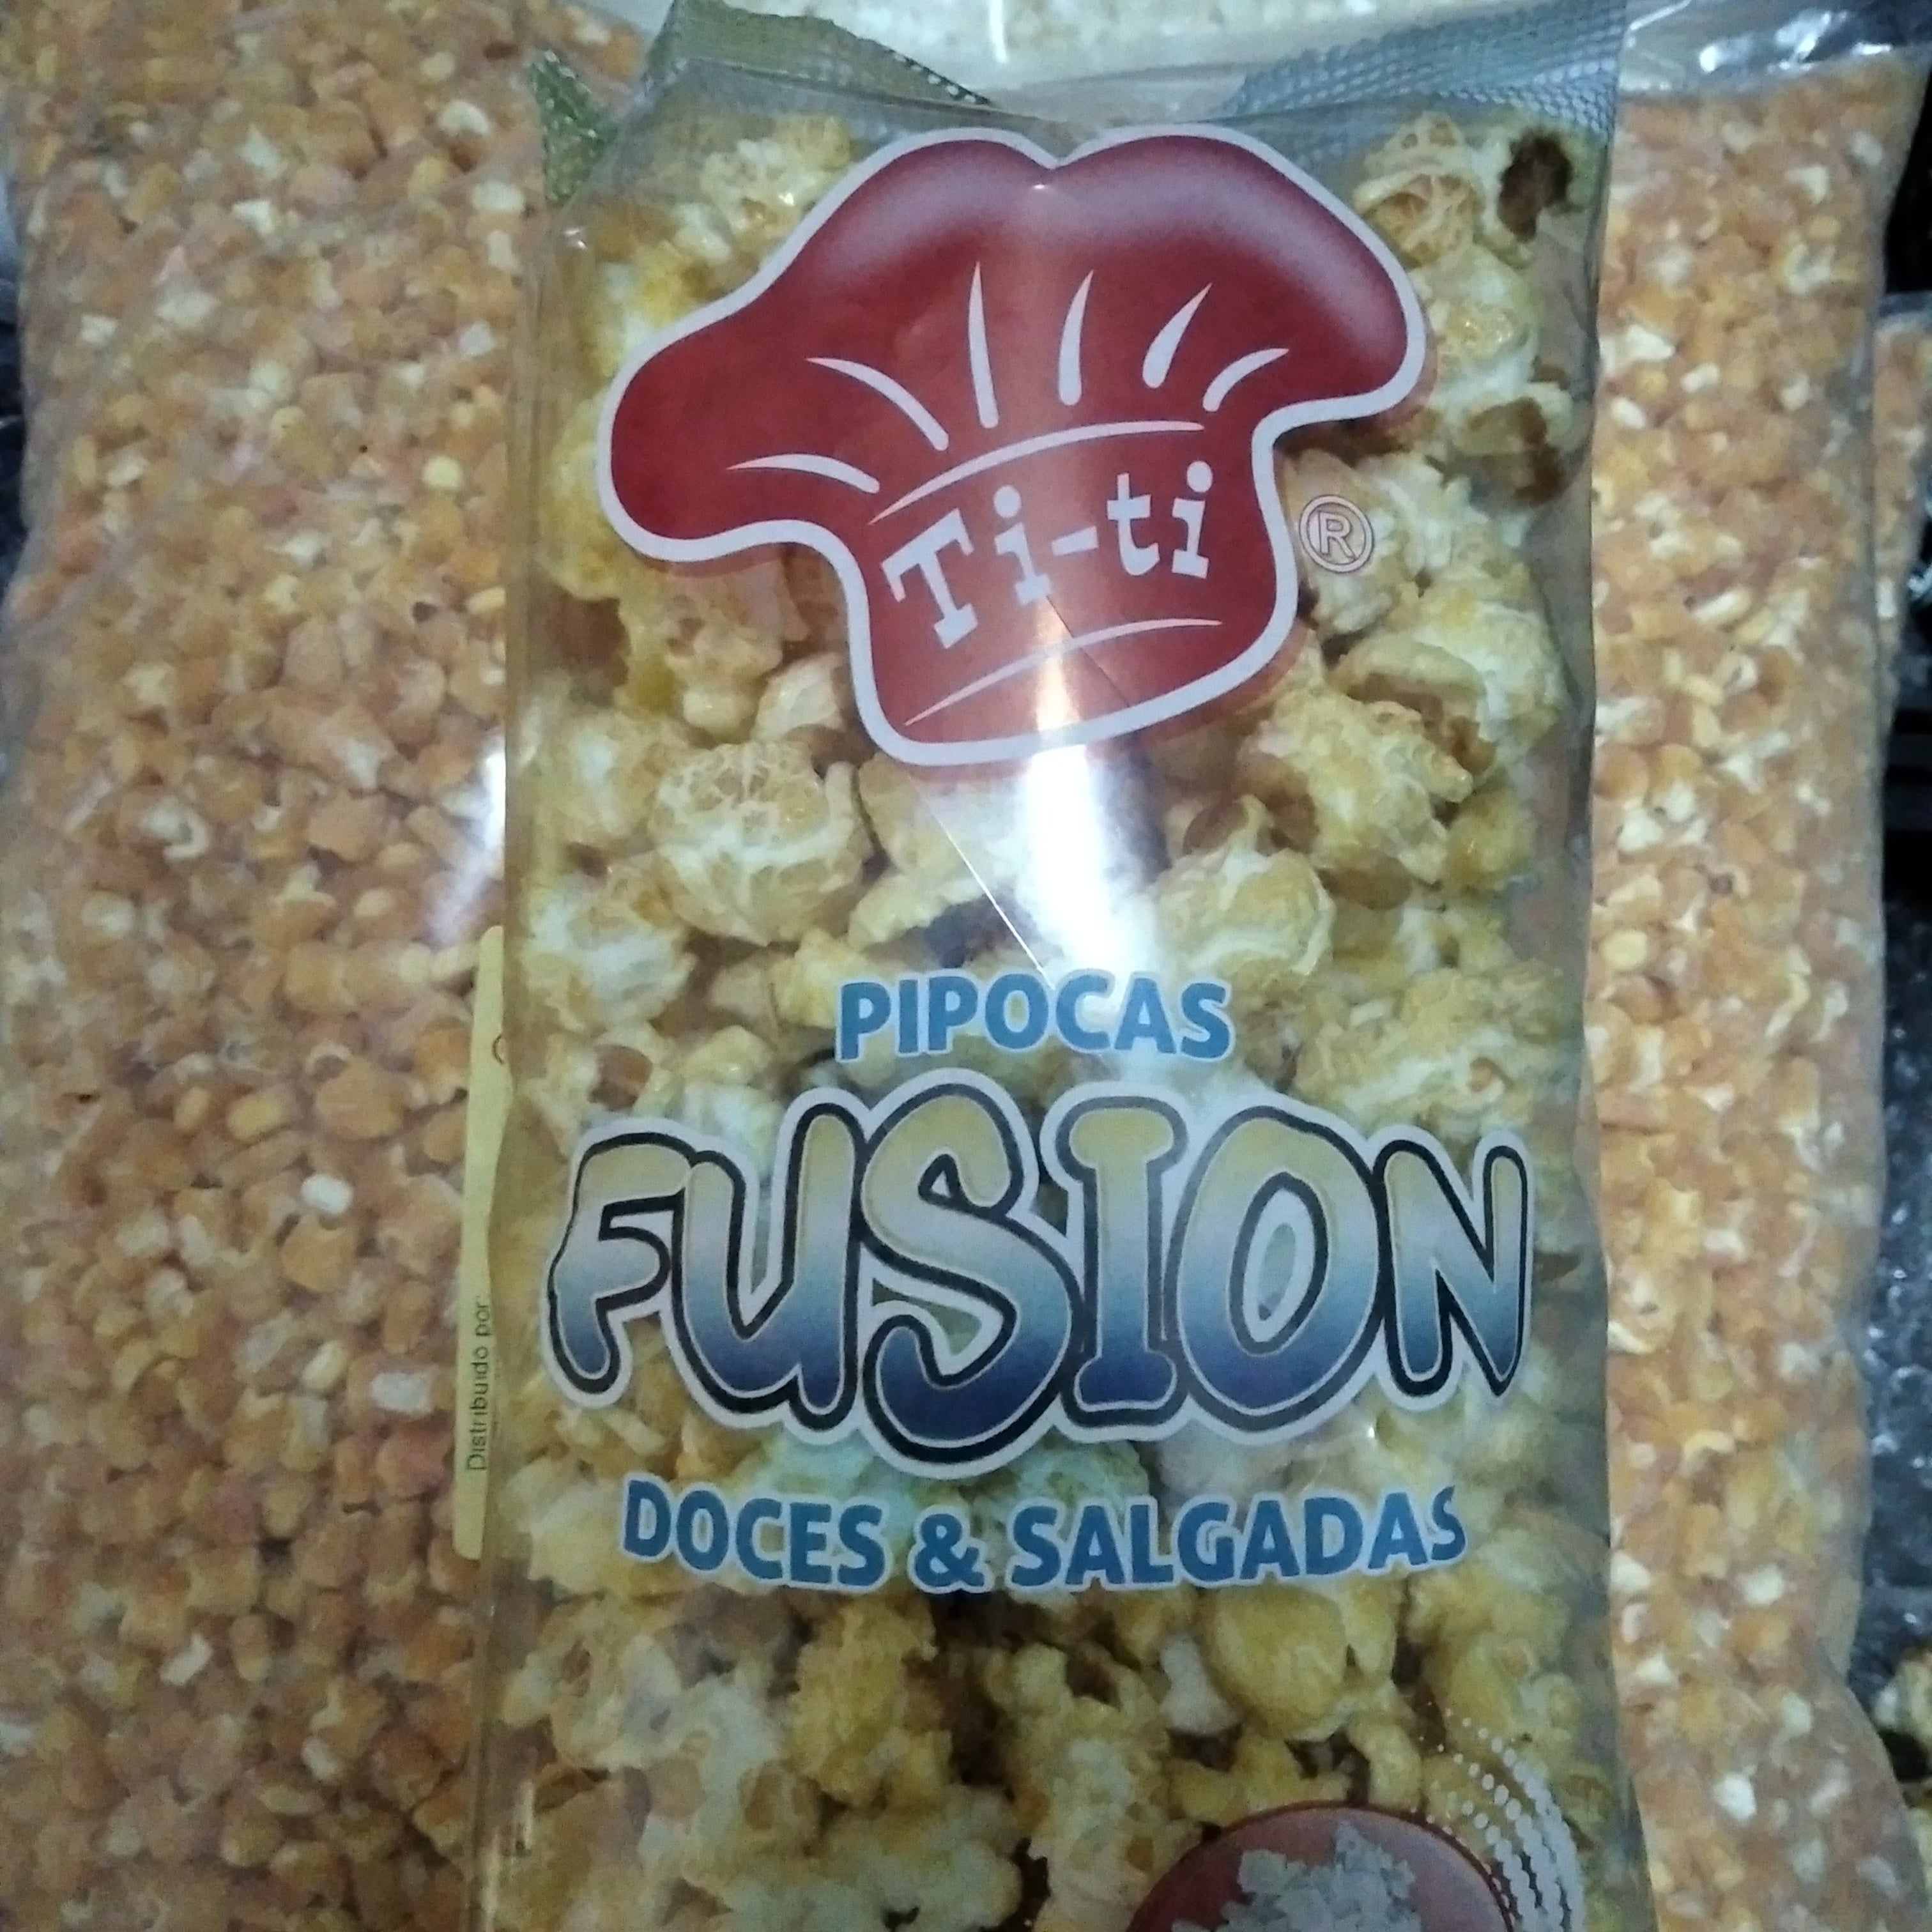 Pipocas fusion (doces e salgadas)65 gramas